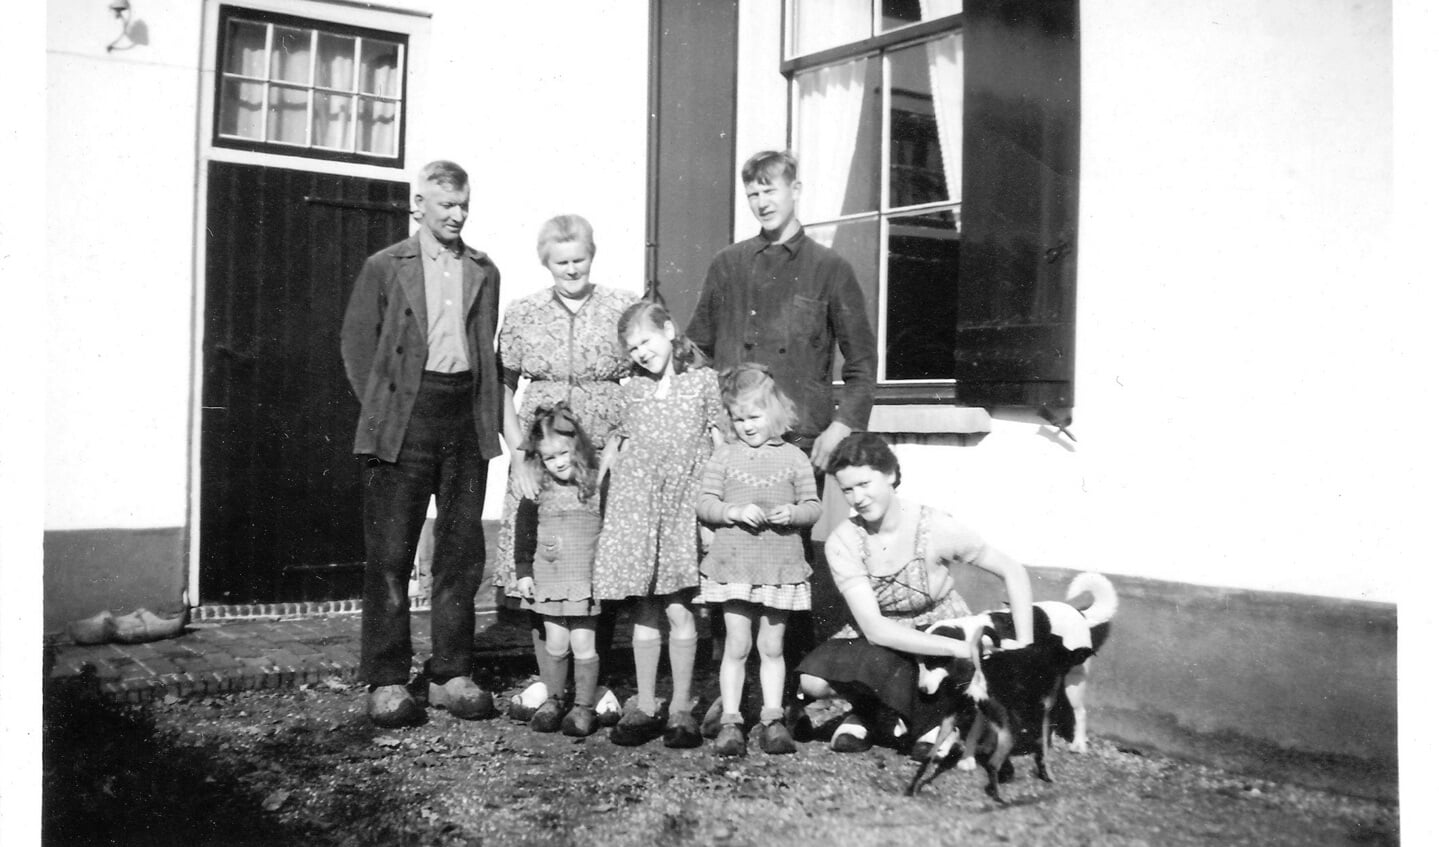 Op deze foto uit 1959 staan (achterste rij) voor ‘De Avond’ Grootvader (Barend) van Amerongen, grootmoeder van Amerongen en Arie van Amerongen.